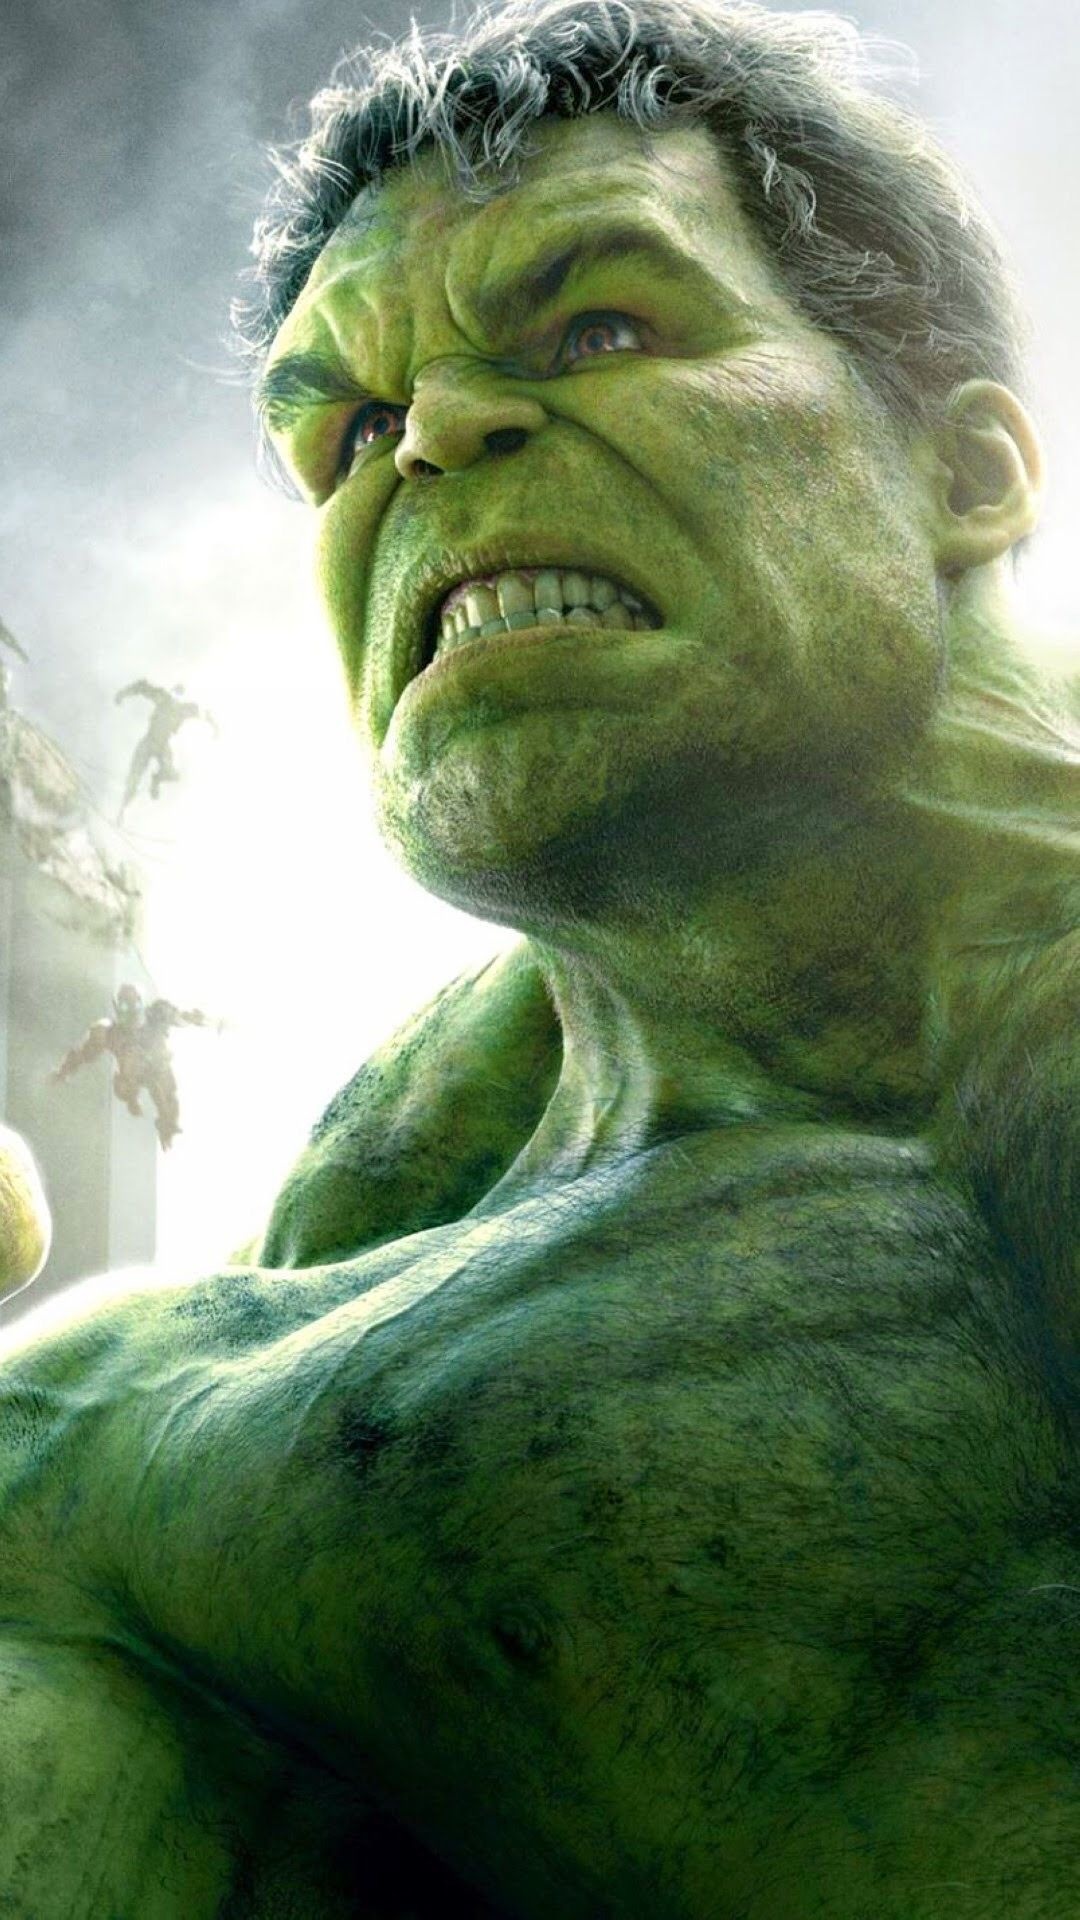 Avengers wallpaper, Hulk Avengers 4k gaming wallpaper, 1080x1920 Full HD Handy